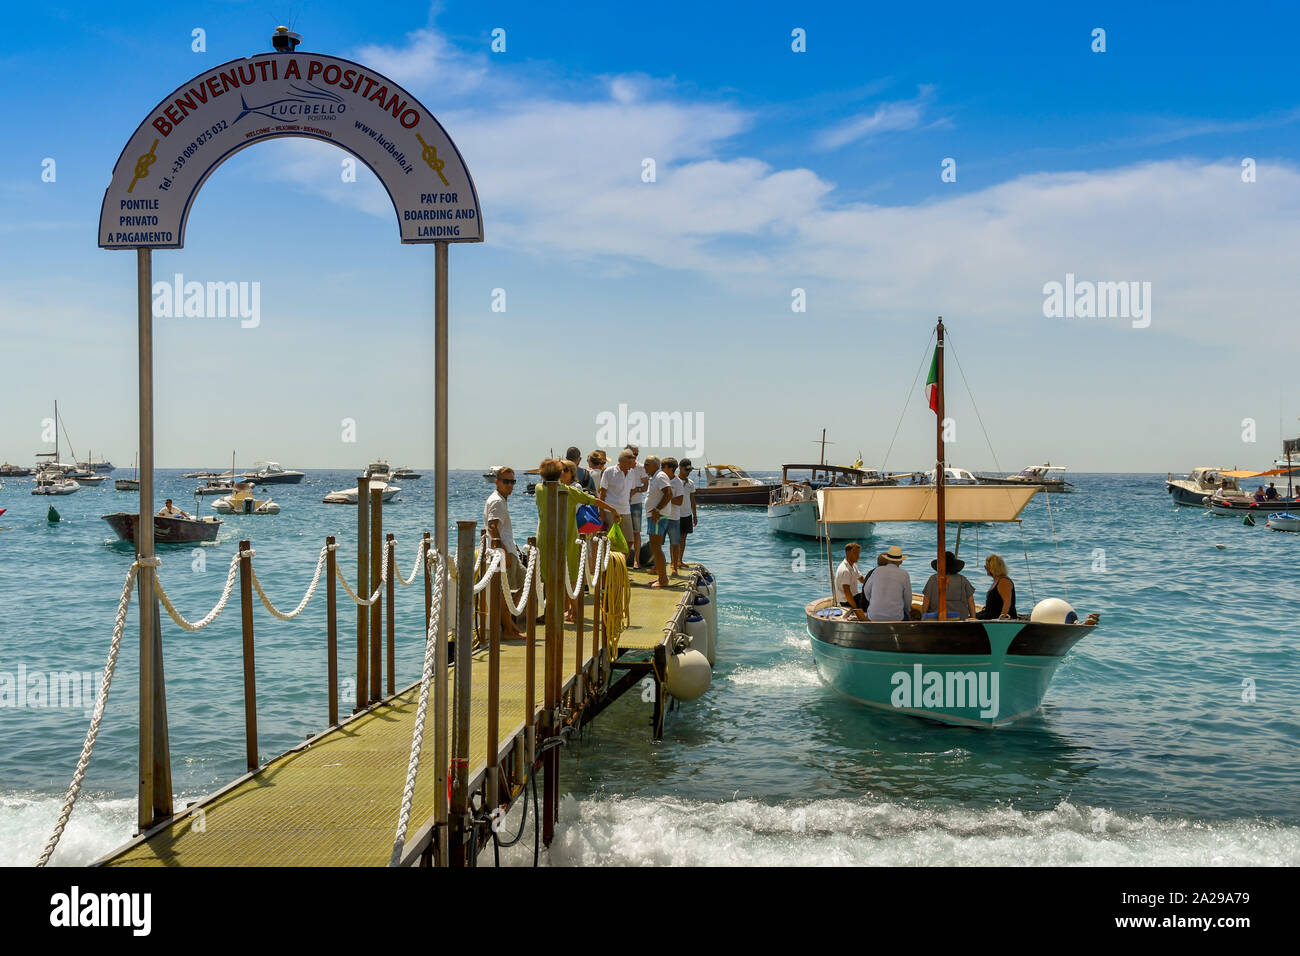 POSITANO, ITALIEN - AUGUST 2019: Menschen warten auf ein eigenes Motorboot auf dem Bootssteg board in Positano. Stockfoto